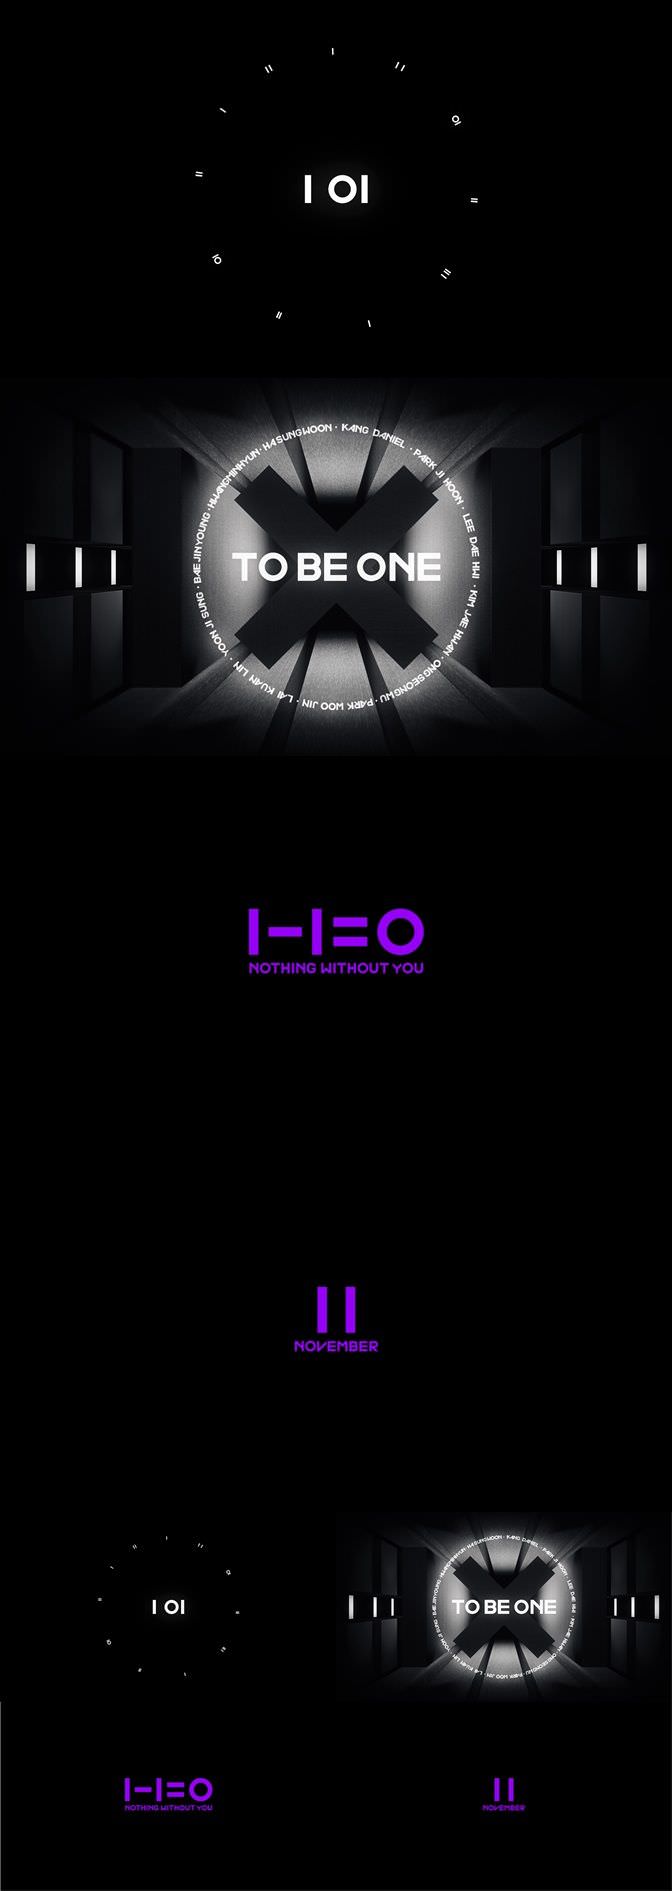 Wanna One拟于11月回归 专辑定为《1-1=0》